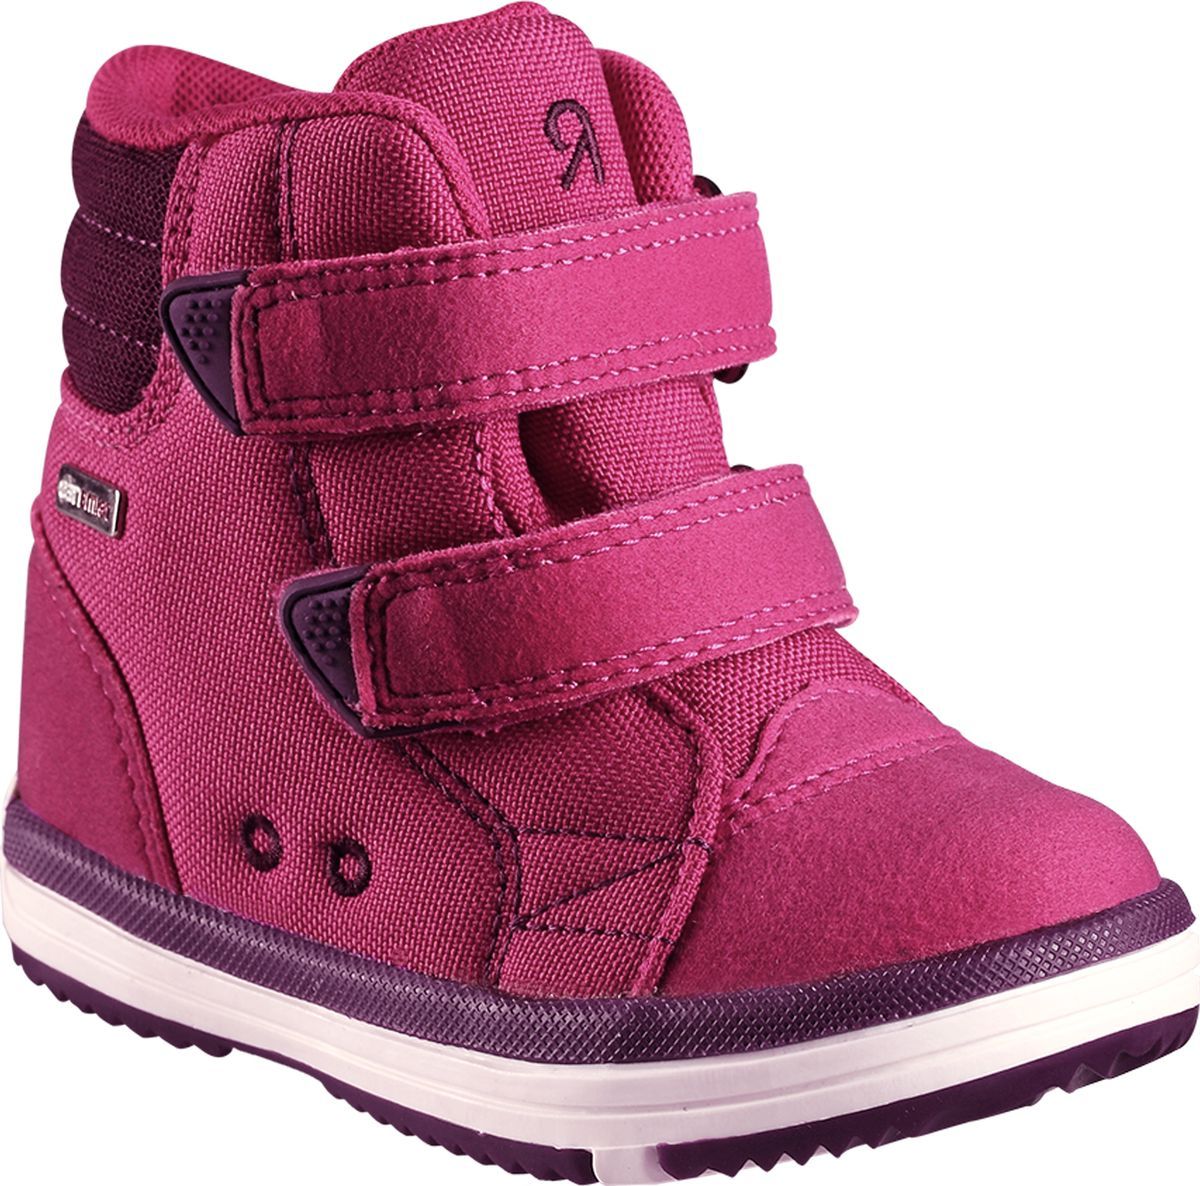 Ботинки детские Reima Patter, цвет: розовый. 5693443600. Размер 27